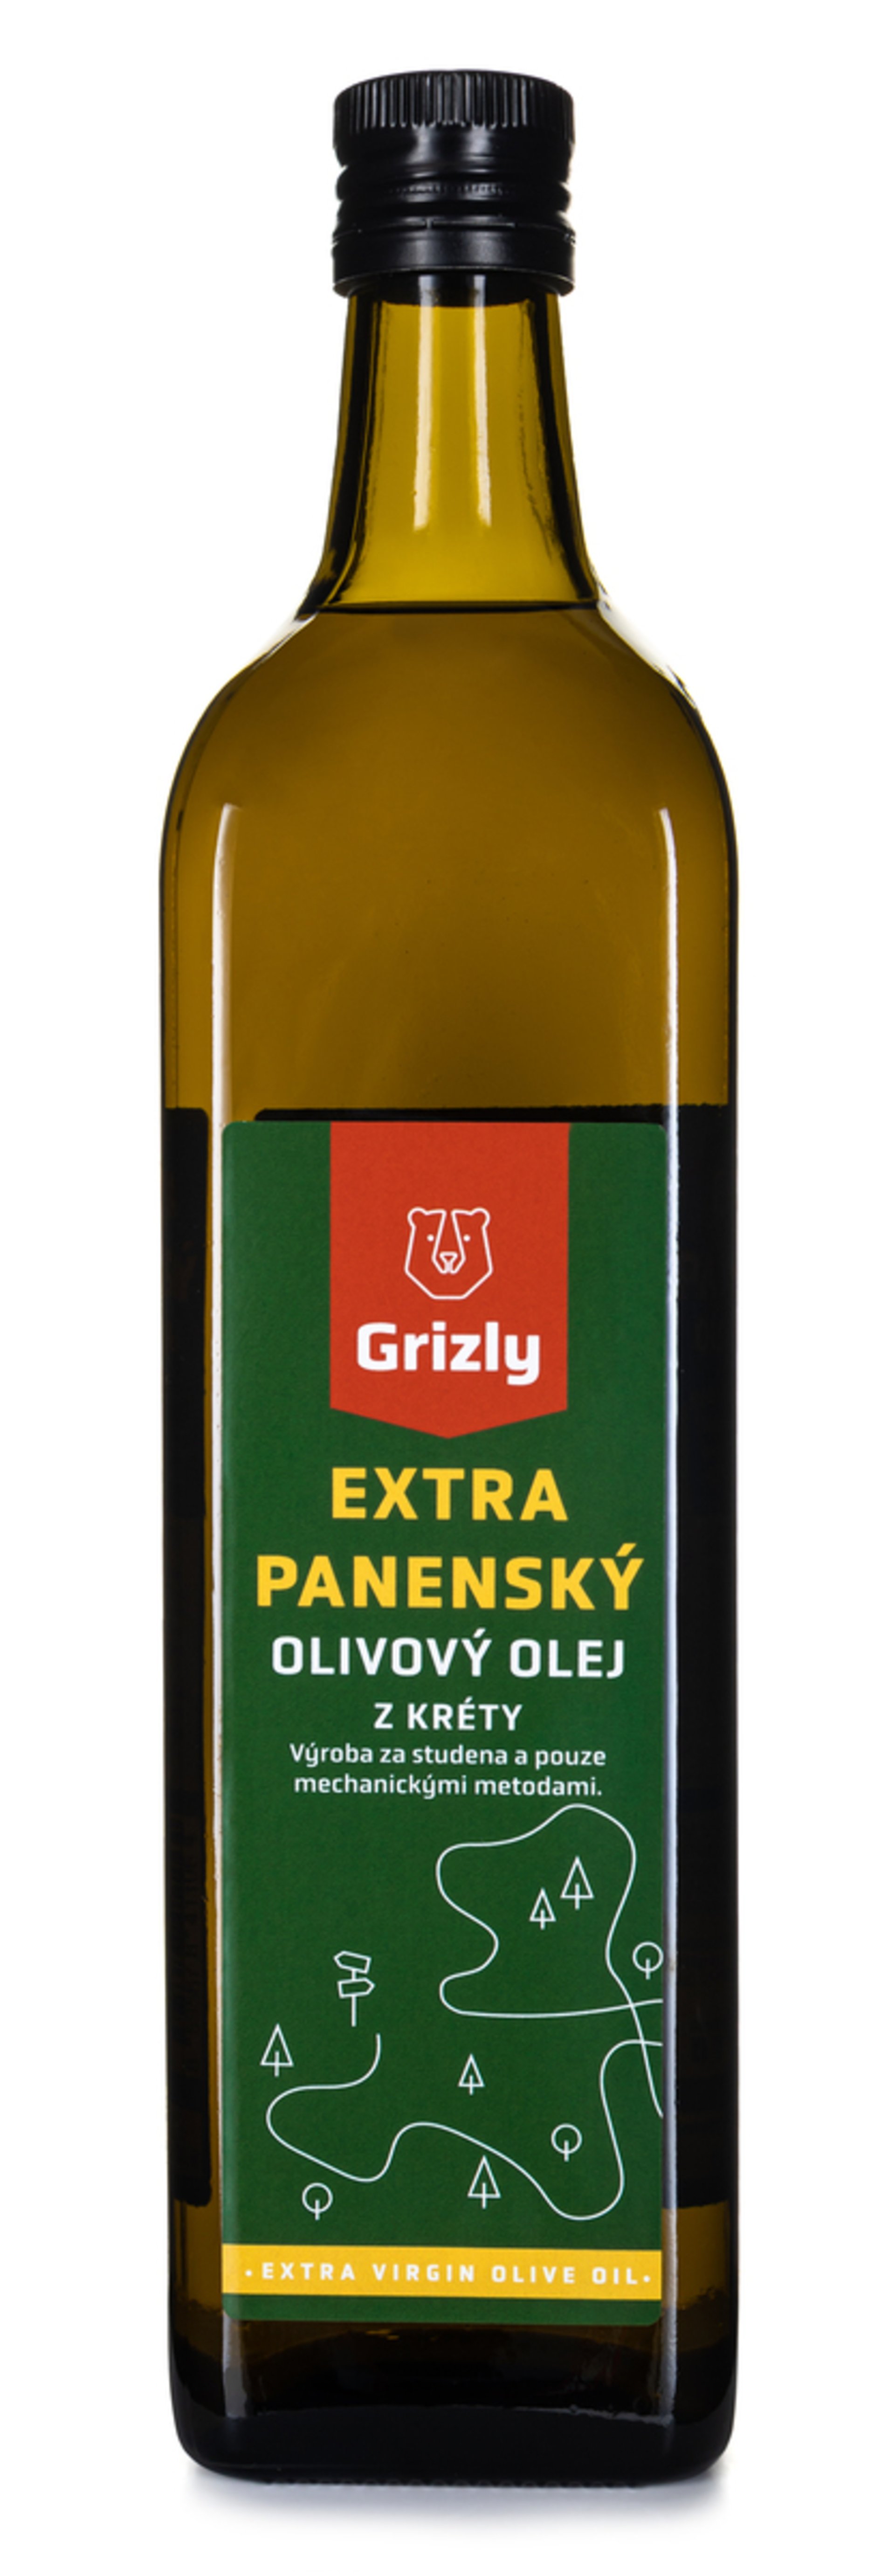 Co je extra panenský olivový olej?